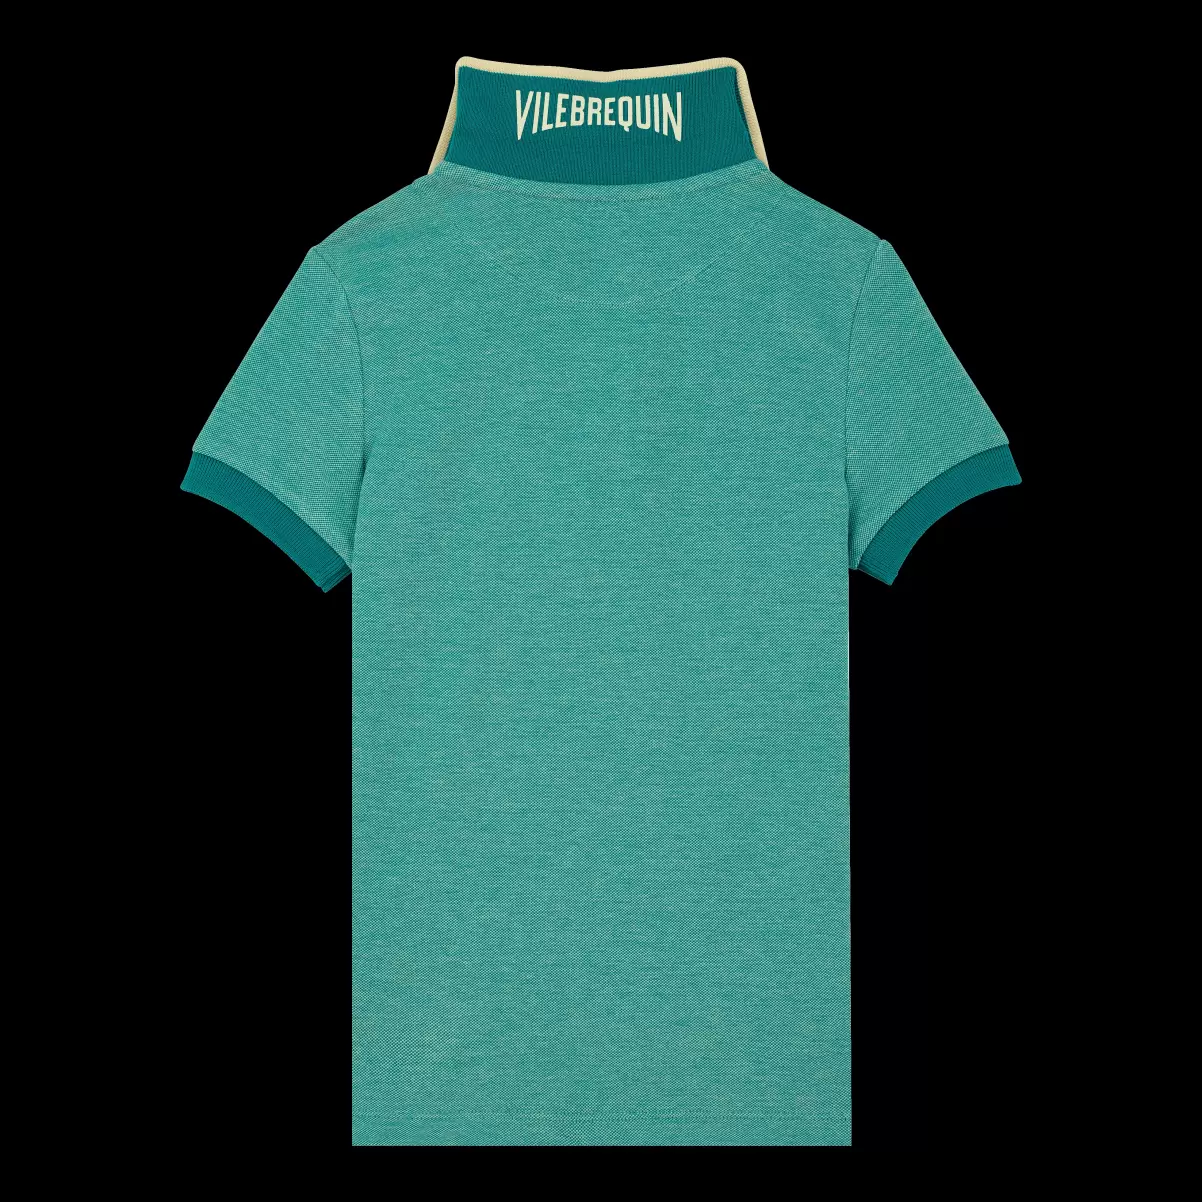 Vilebrequin Jungen Polohemden Emerald / GrÜN Werbung Solid Polohemd Aus Baumwollpikee Mit Farbwechsel Für Jungen - 1